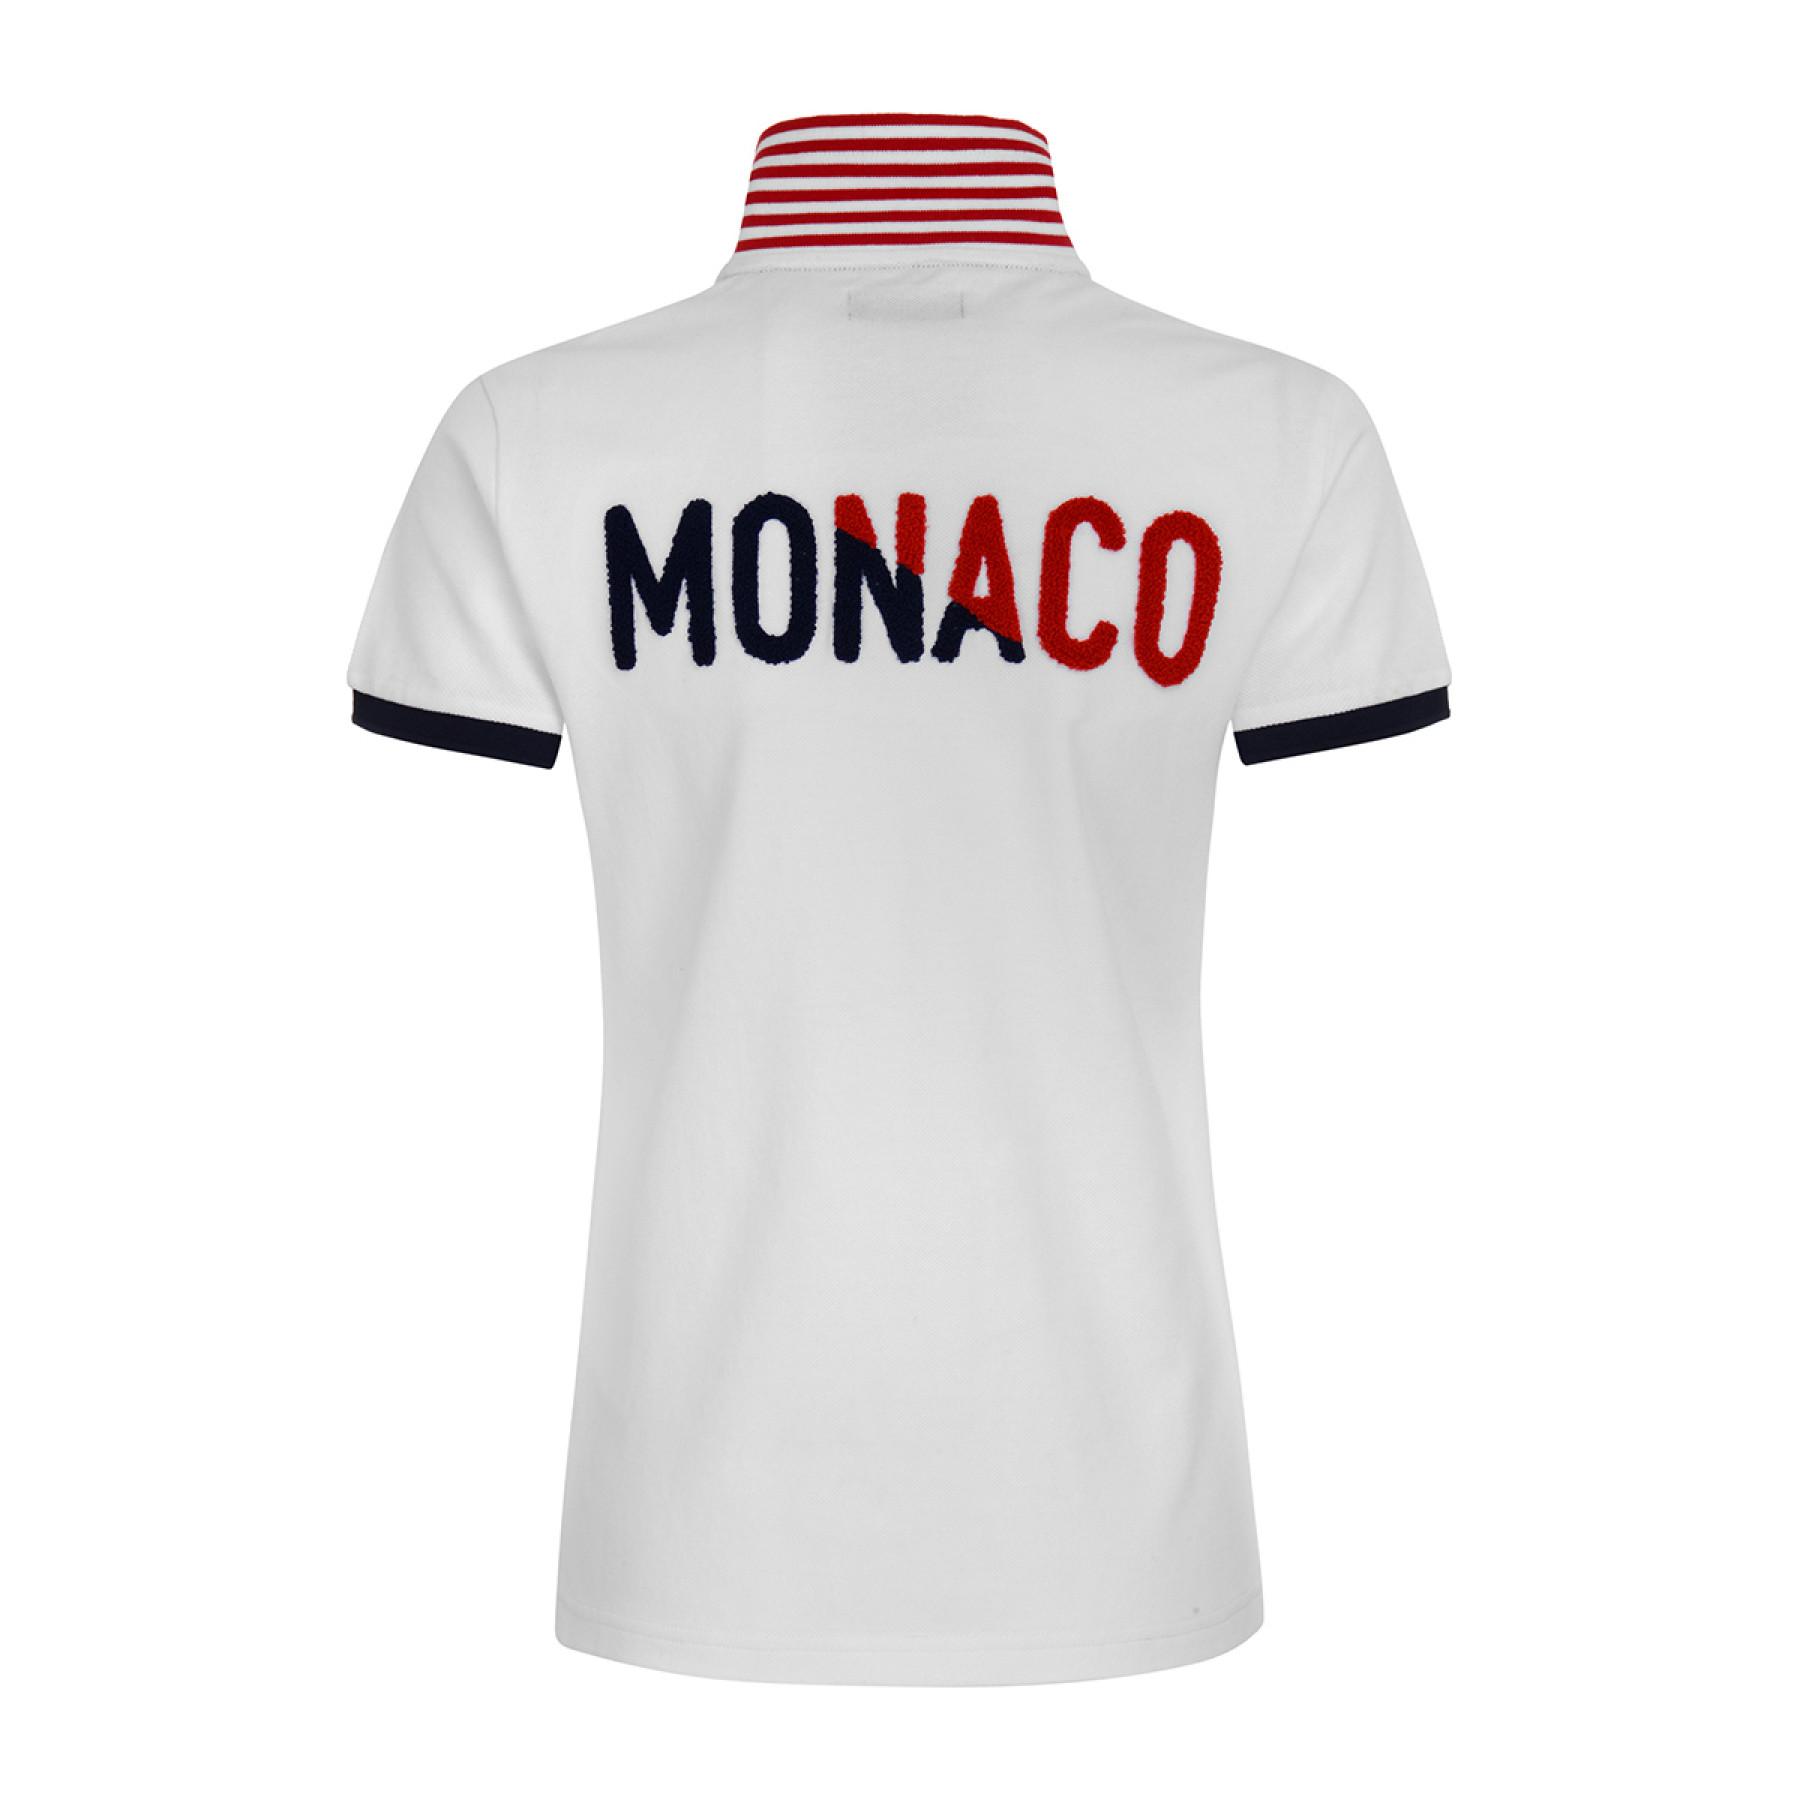 Polo de mujer AS Monaco 2020/21 blanche